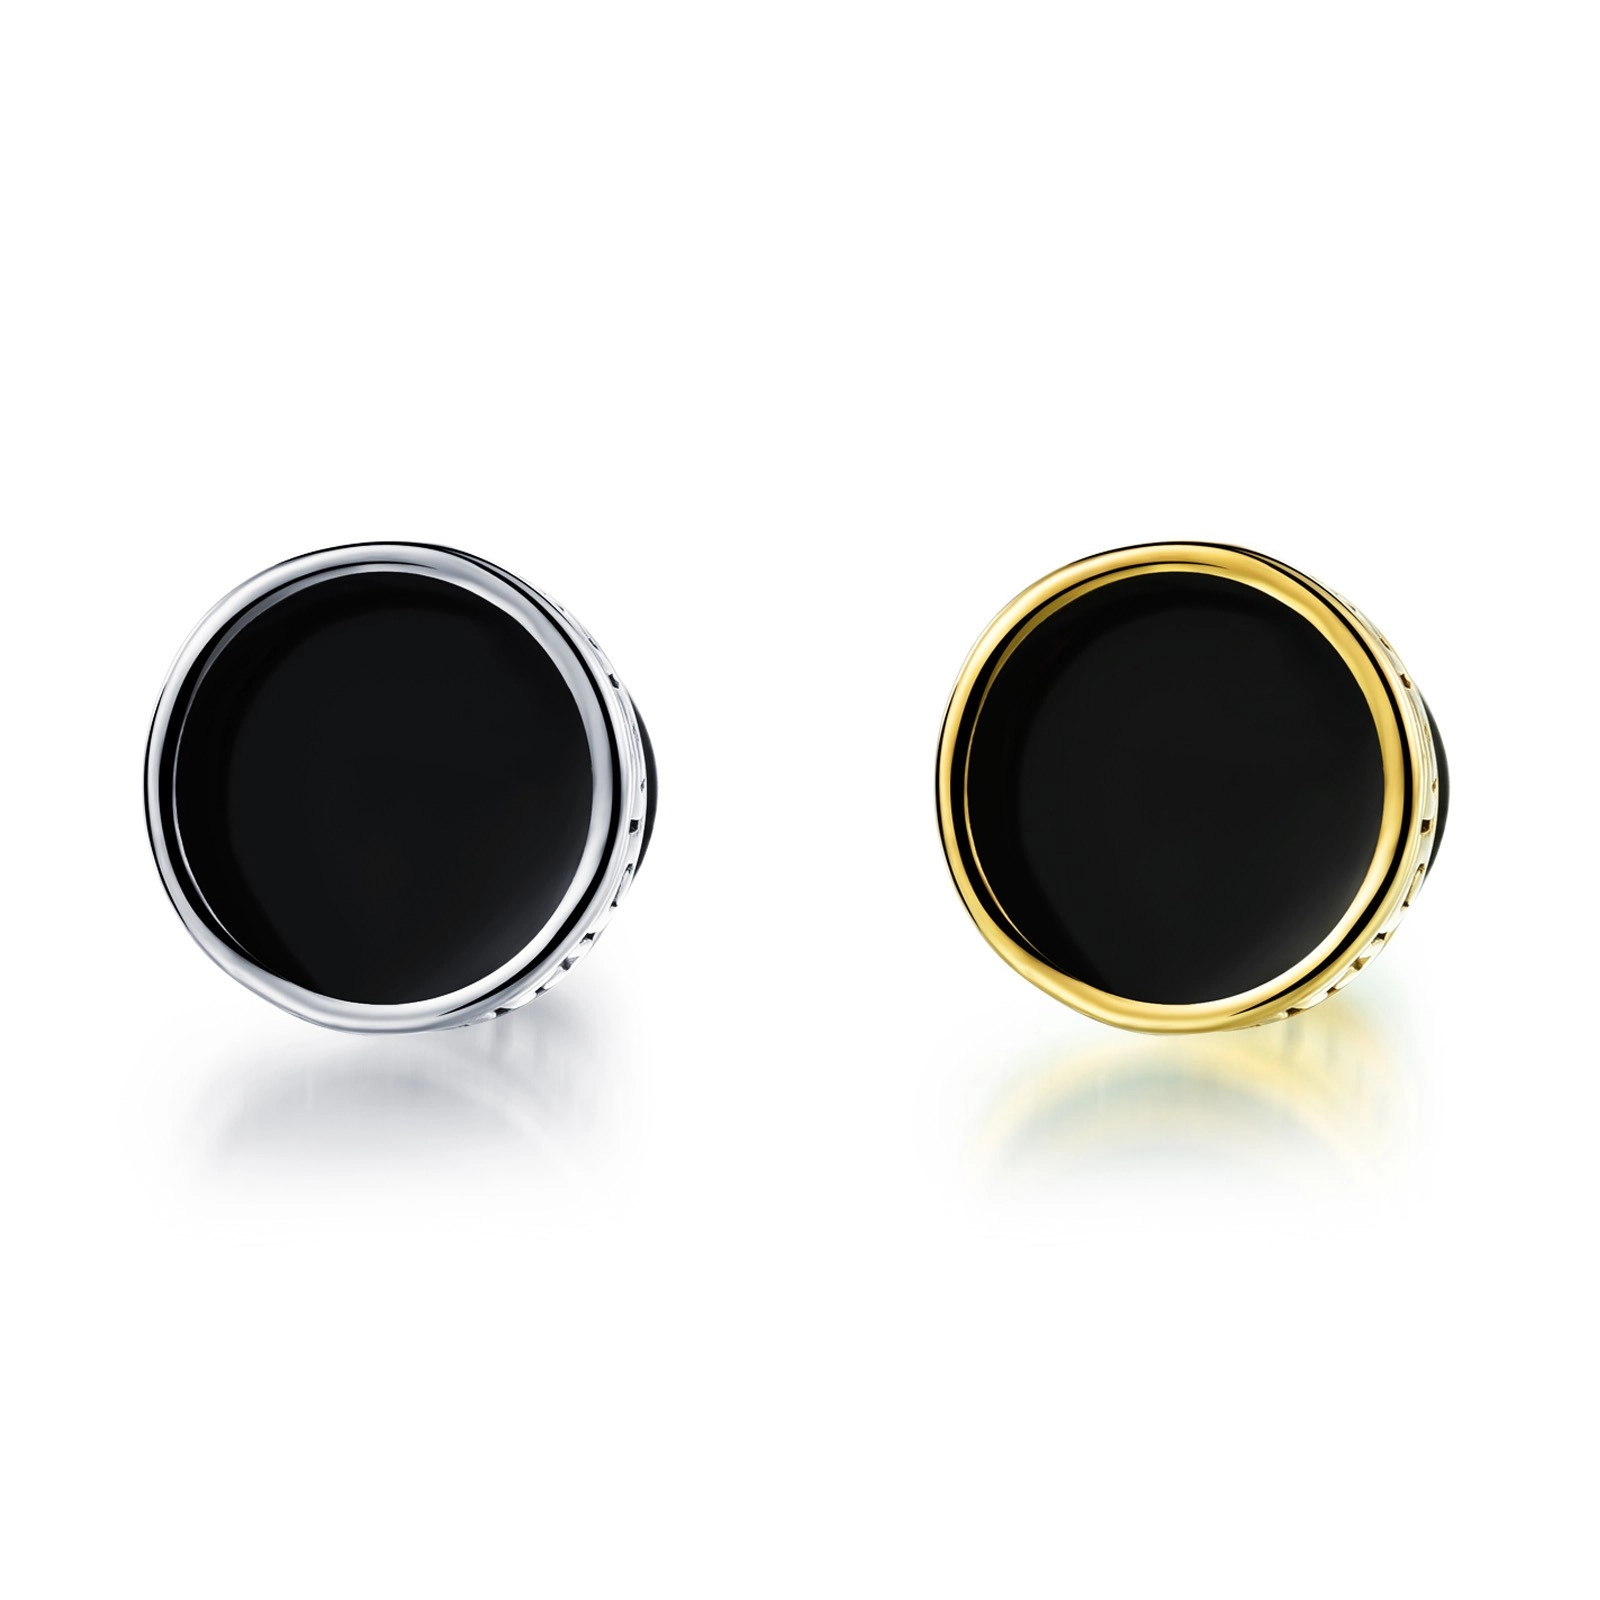 E-shop Šperky Eshop - Oceľový fake plug do ucha - kolieska s gréckym kľúčom, čierna glazúra, dve variácie SP82.25 - Farba: Strieborná